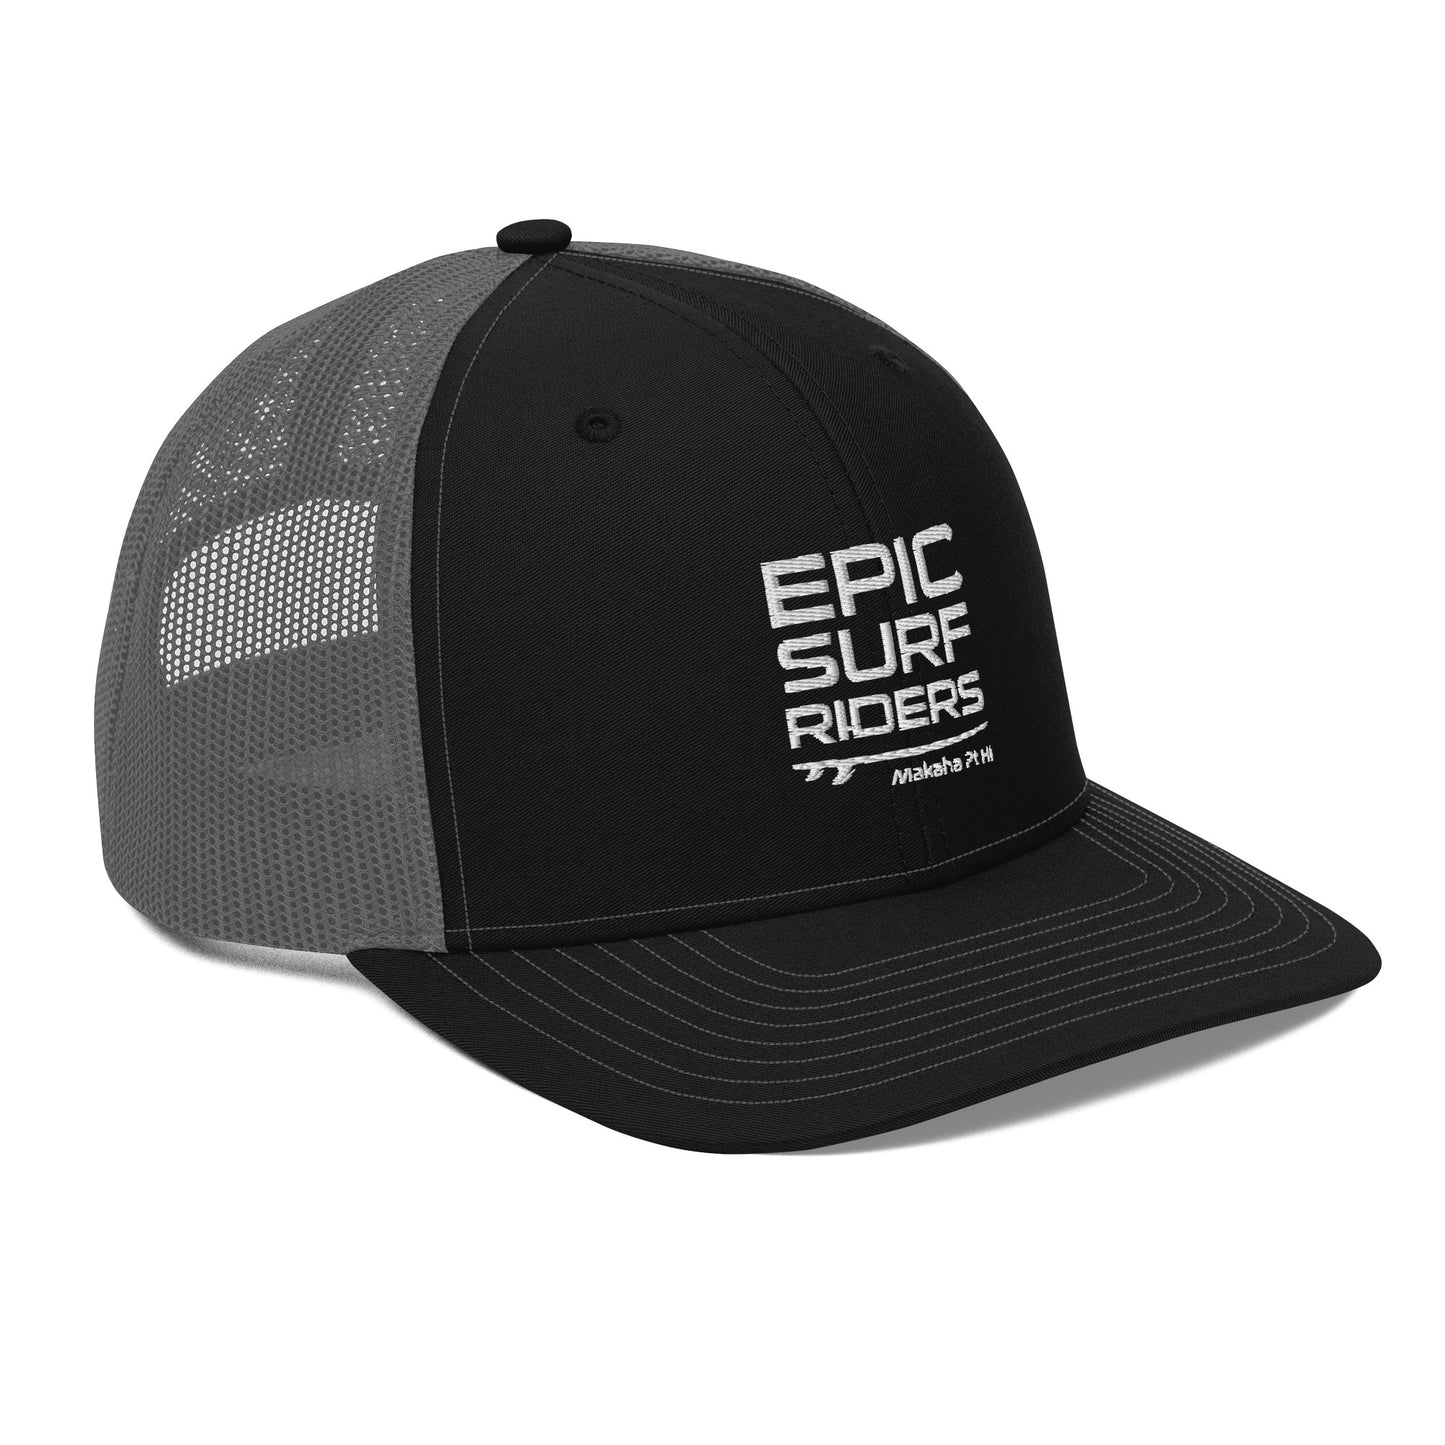 Epic Surfriders - Trucker Cap